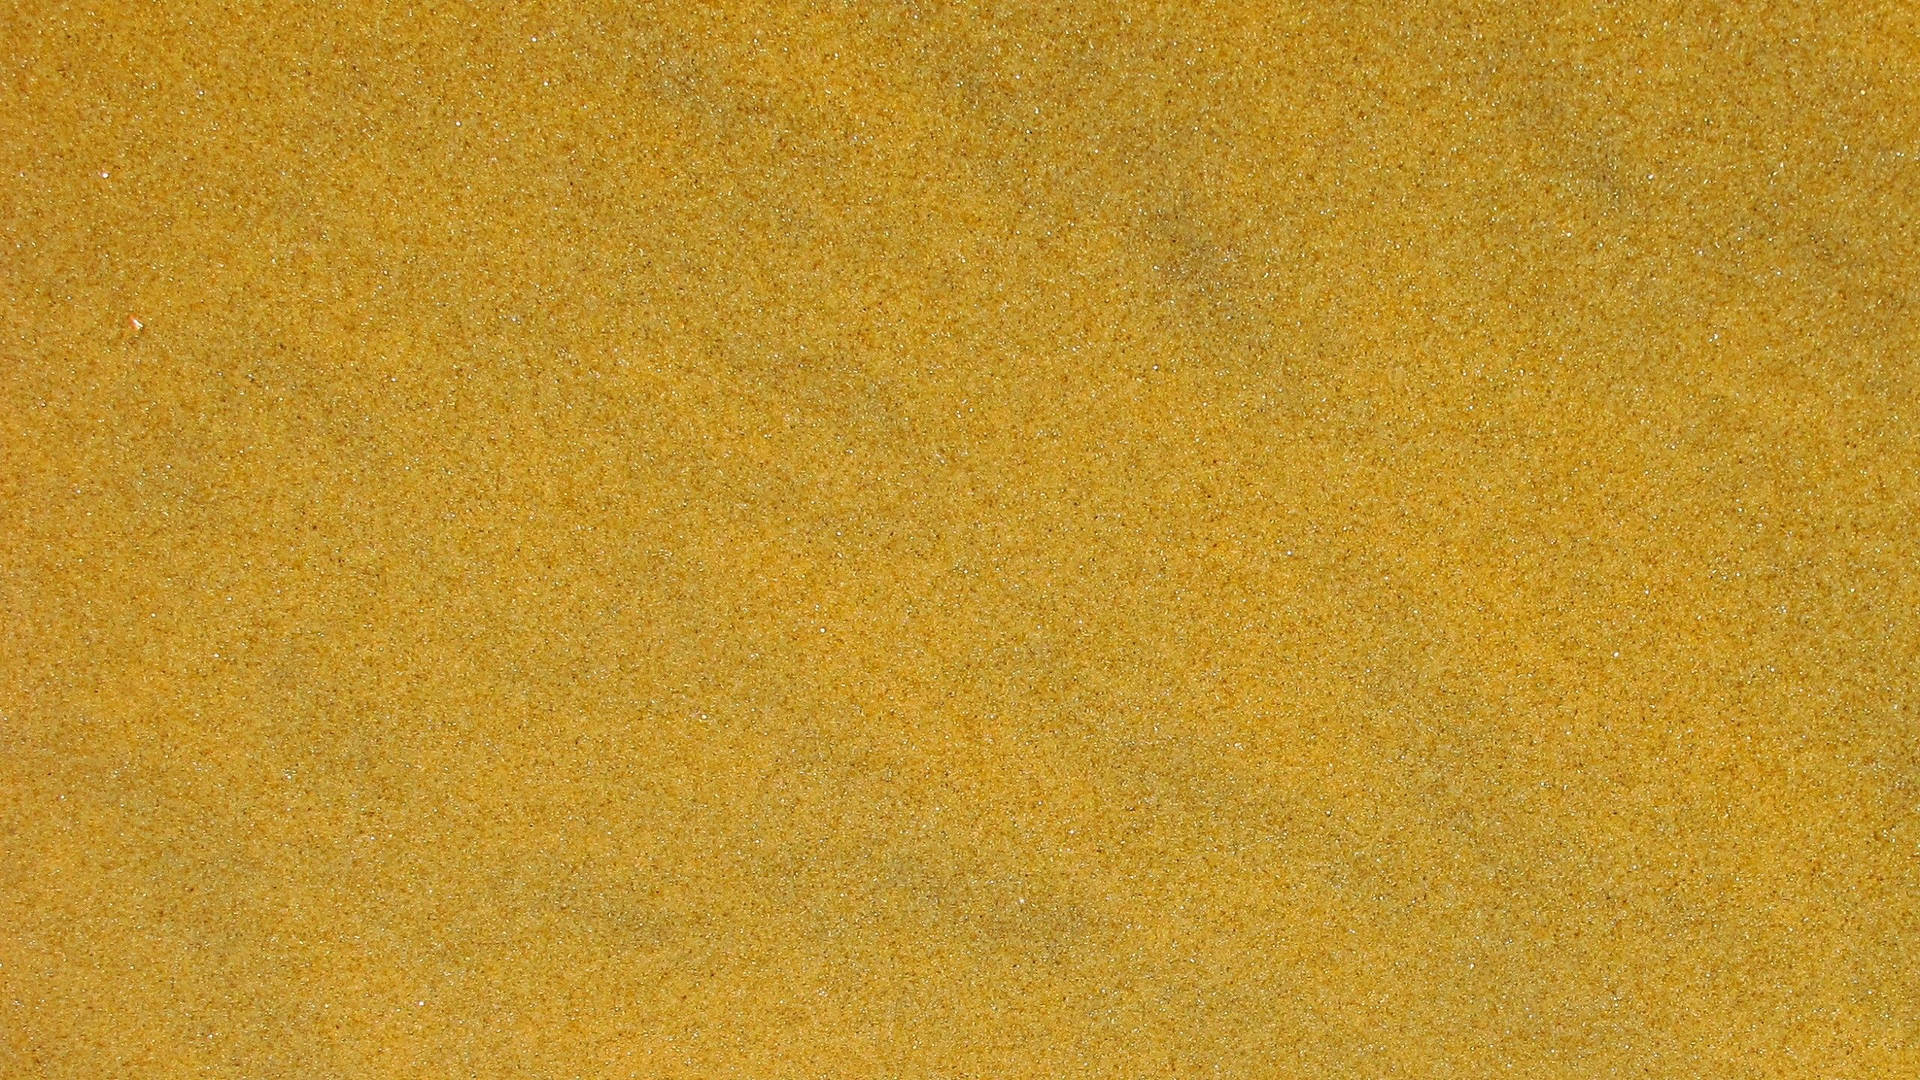 Gold 2560X1440 wallpaper